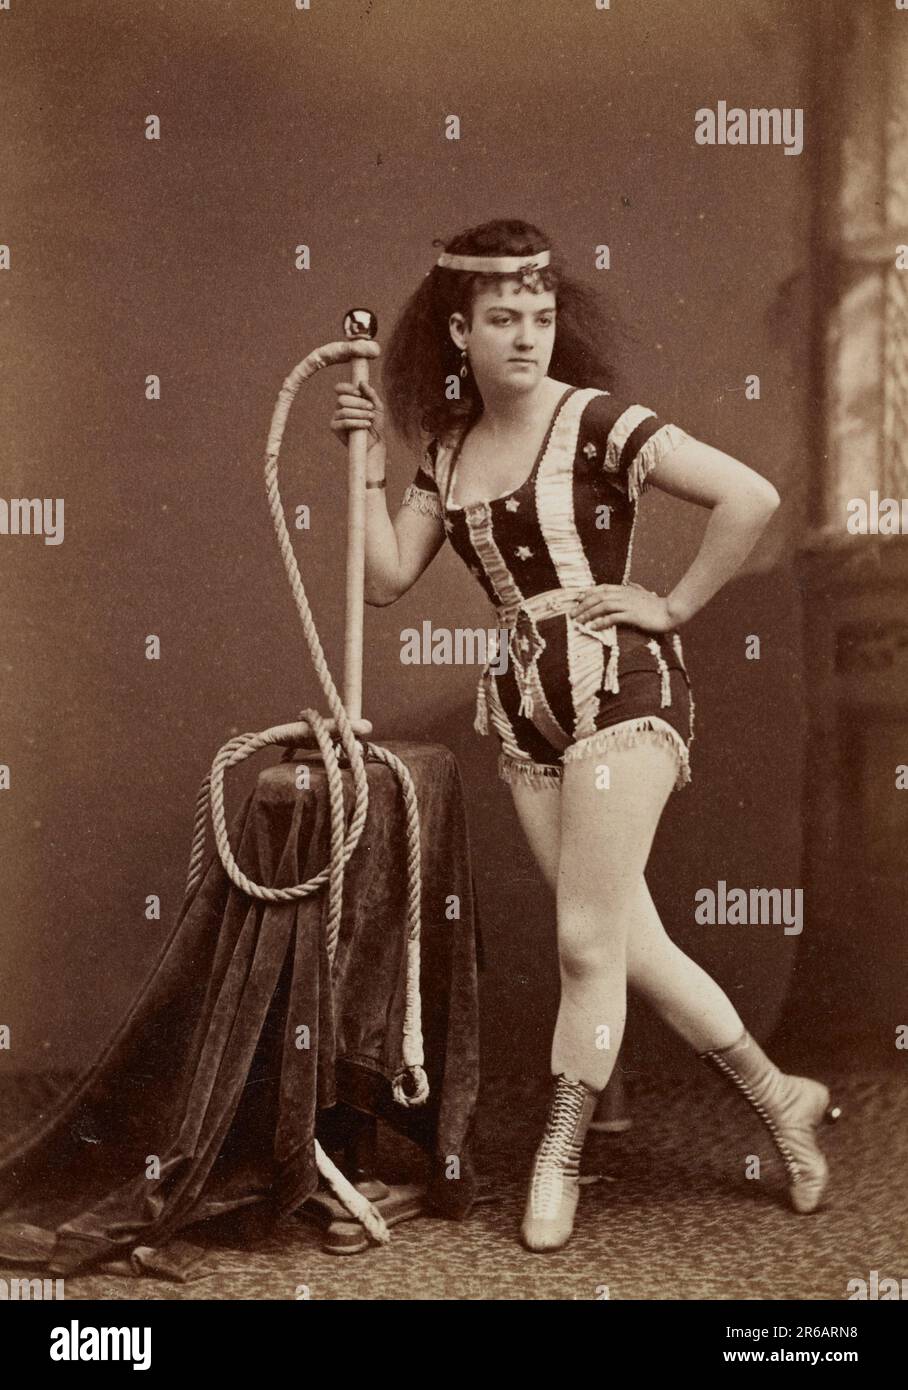 Leona Dare (1854/55 - 23./24. Mai 1922) war eine amerikanische Trapezkünstlerin und Luftakrobatin, die oft als Königin der Antillen oder Stolz von Madrid bezeichnet war. Sie war berühmt für ihre Kunststücke auf Trapezen, die an aufsteigenden Ballons hingens, Historisch, digital restaurierte Reproduktion von einer Vorlage aus dem 19. Jahrhundert / Leona Dare (1854/55 - 23.-24. Mai 1922) war ein amerikanischer Trapezkünstler und Aerialist, oft auch als Königin der Antillen oder Stolz von Madrid bezeichnet. Sie war berühmt für ihre Leistungen auf Trapezen, die von aufsteigenden Ballons hängen, historisch, digital Stockfoto